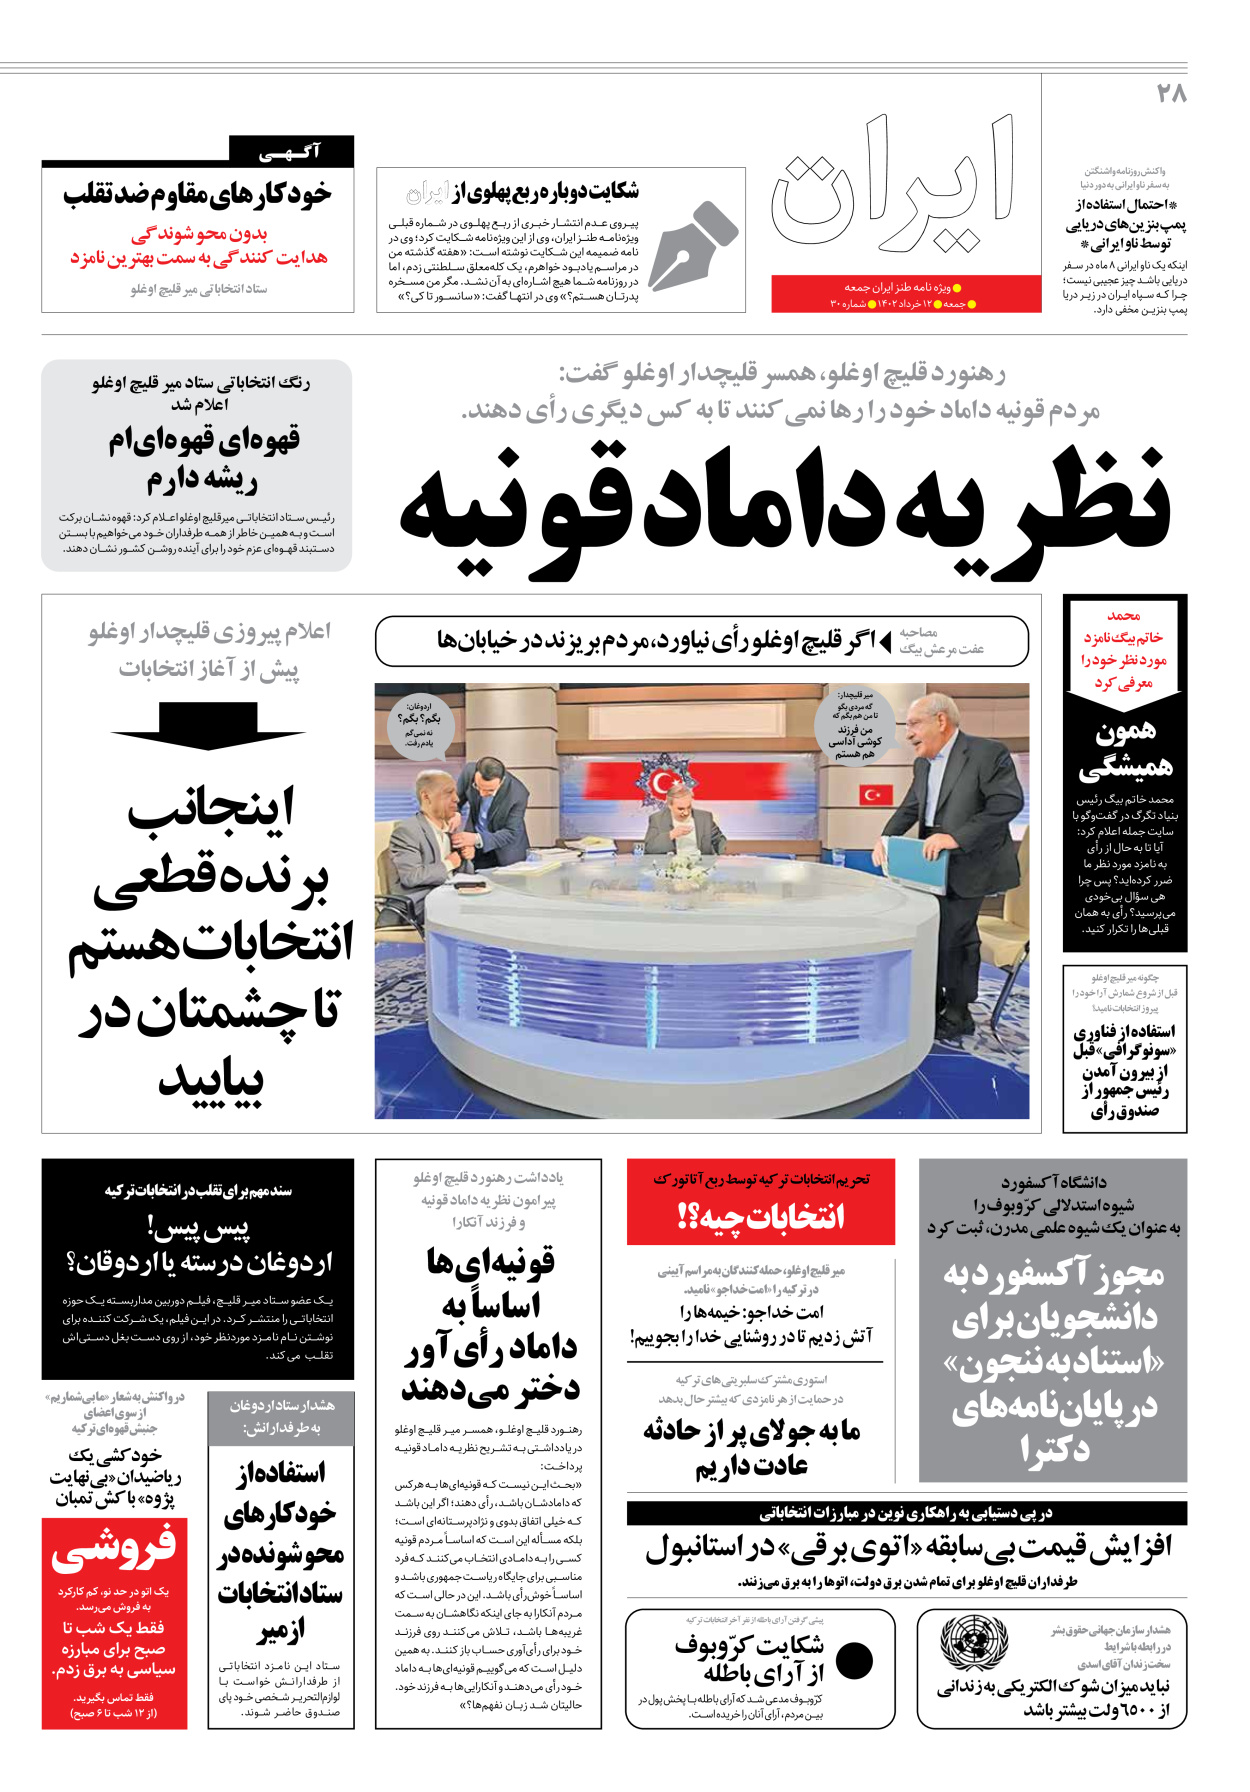 روزنامه ایران - ویژه نامه جمعه۳۰ - ۱۱ خرداد ۱۴۰۲ - صفحه ۲۸